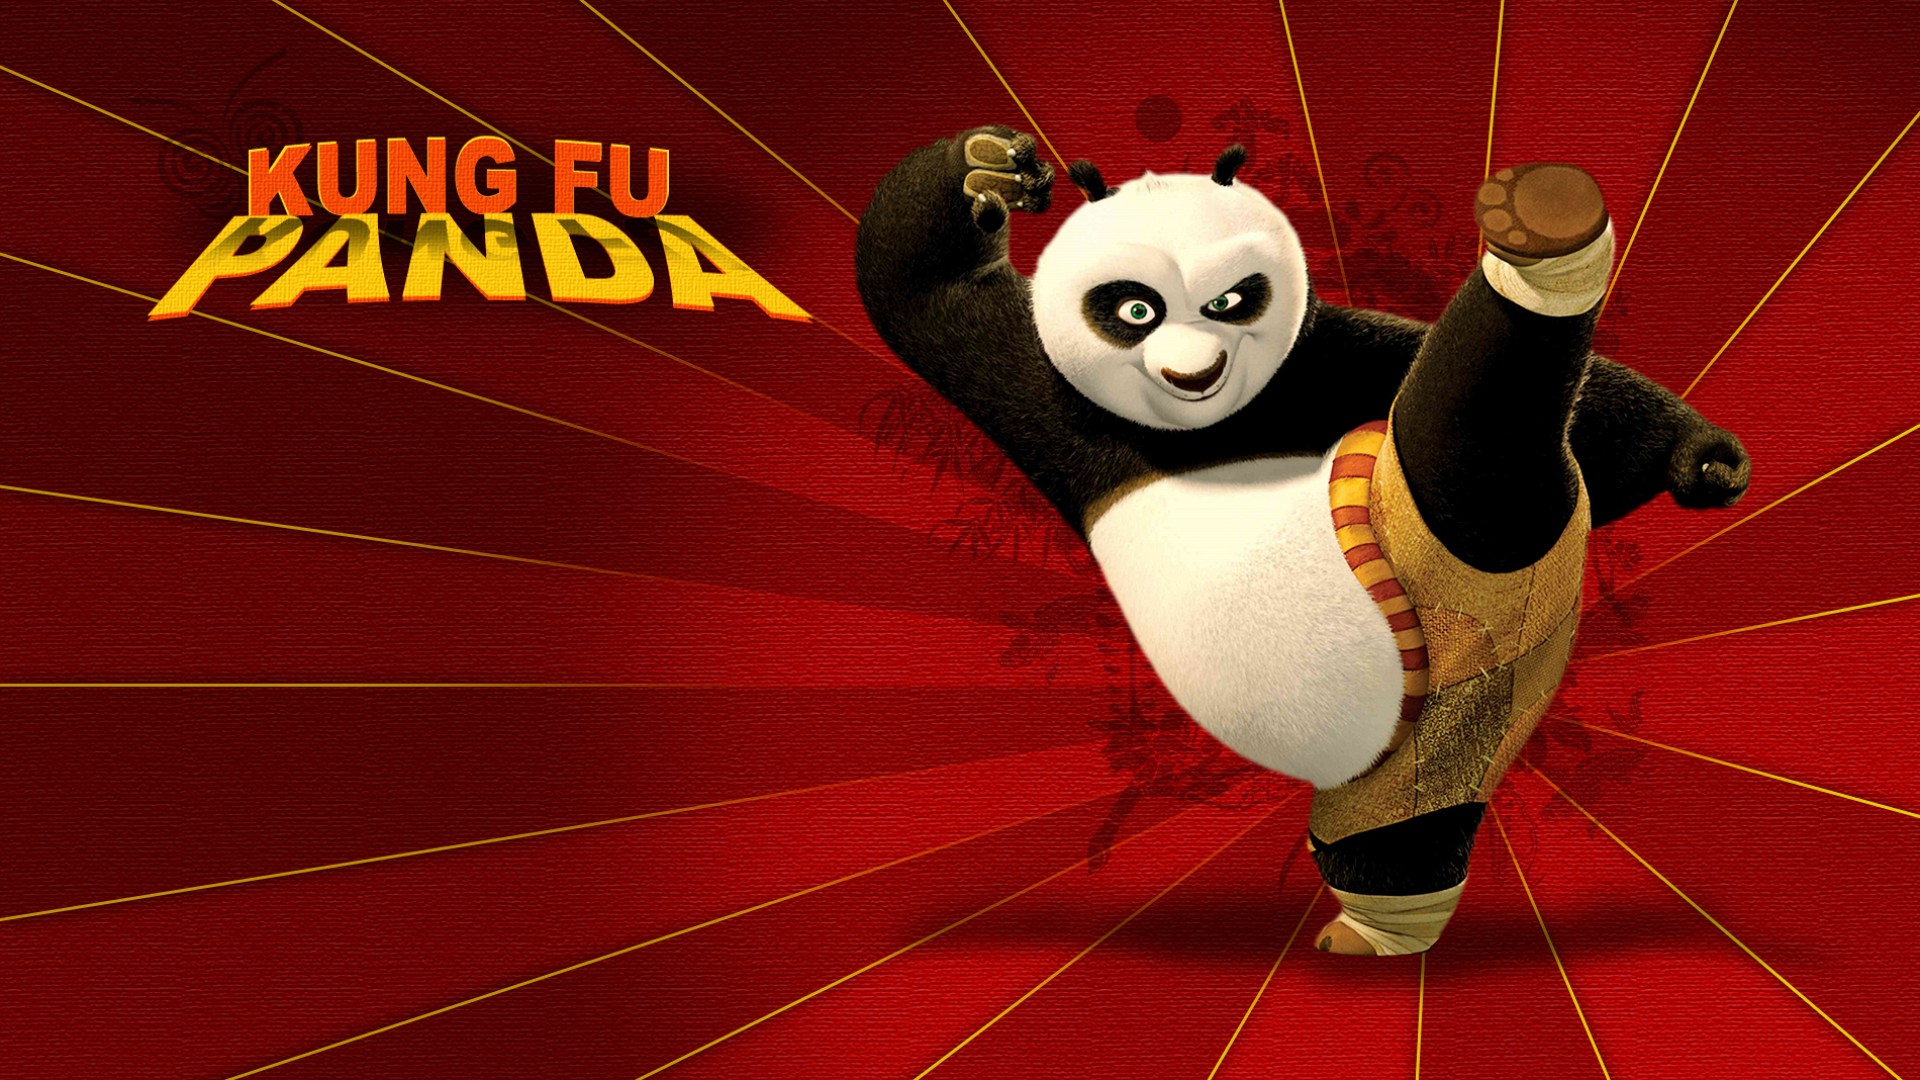 Kung Fu Panda 3 Wallpaper - WallpaperSafari